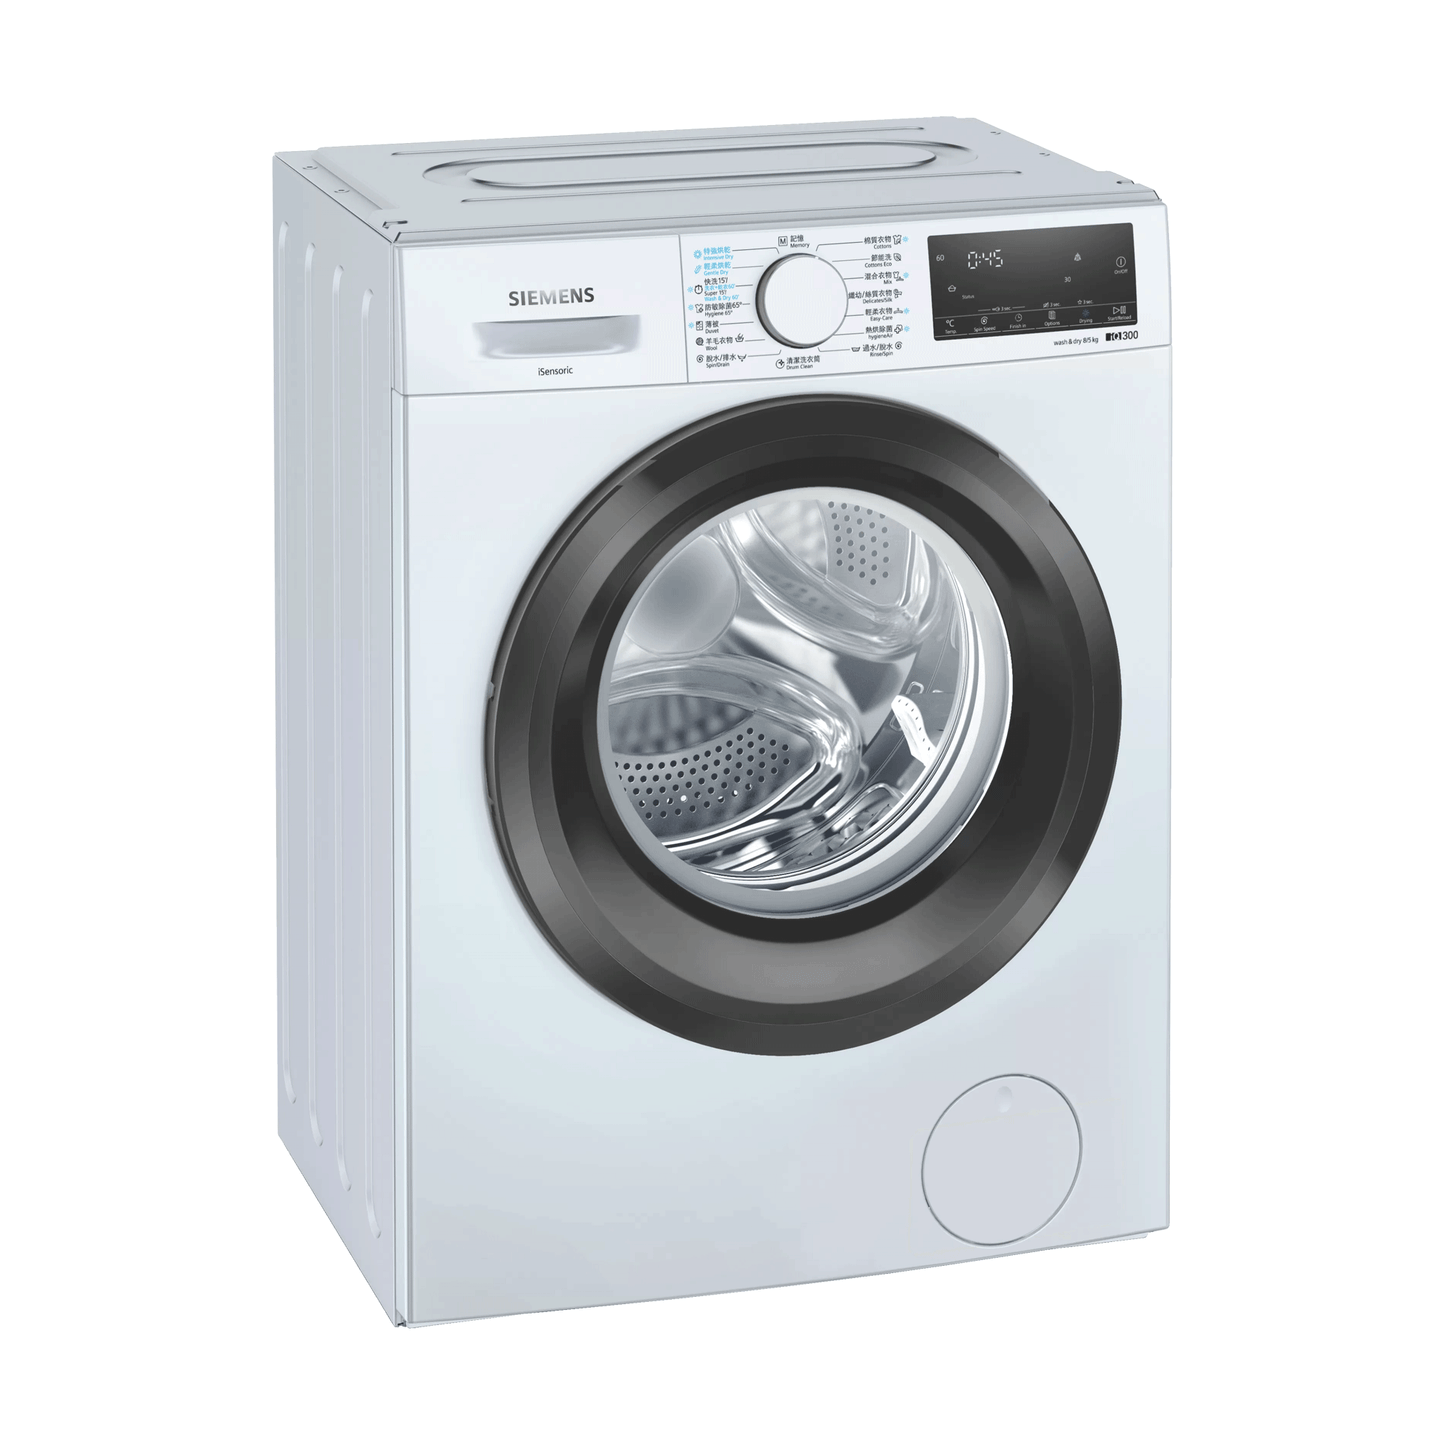 SIEMENS WD14S4B0HK 嵌入式洗衣機和烘乾機 1400rpm 洗衣乾衣機廚房櫃底專用